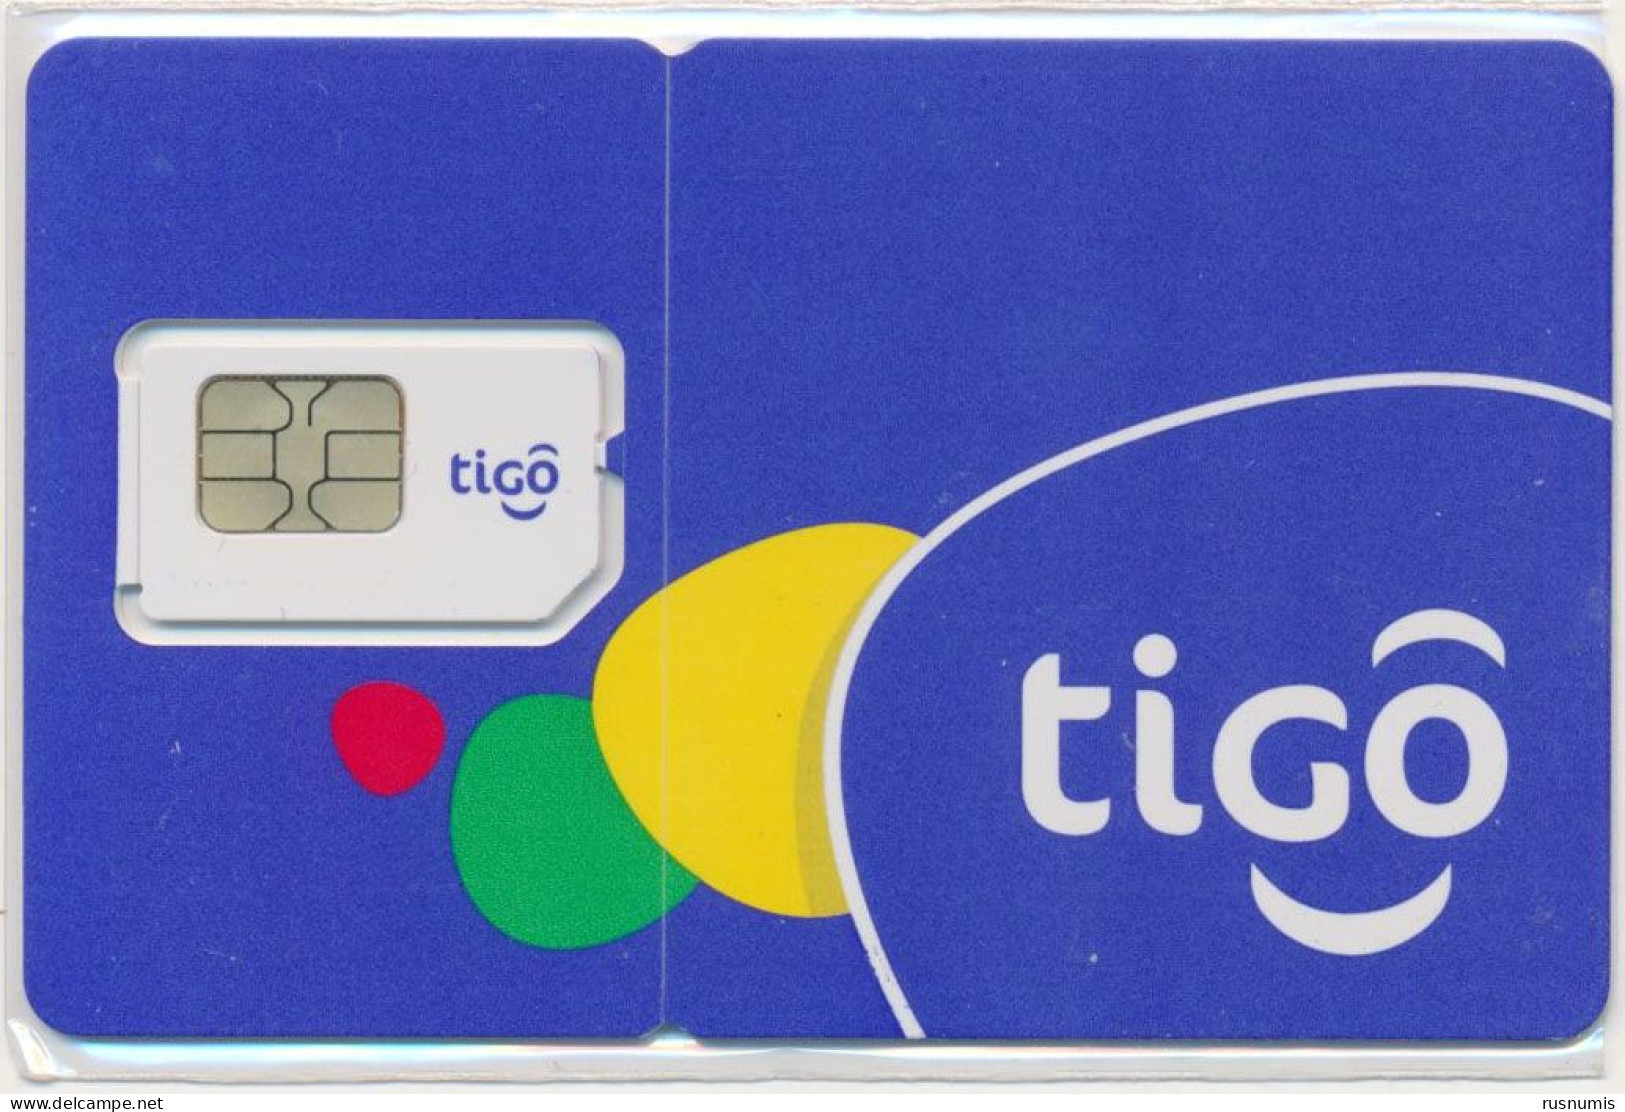 EL SALVADOR TIGO GSM (SIM) CARD MINT UNUSED - Salvador